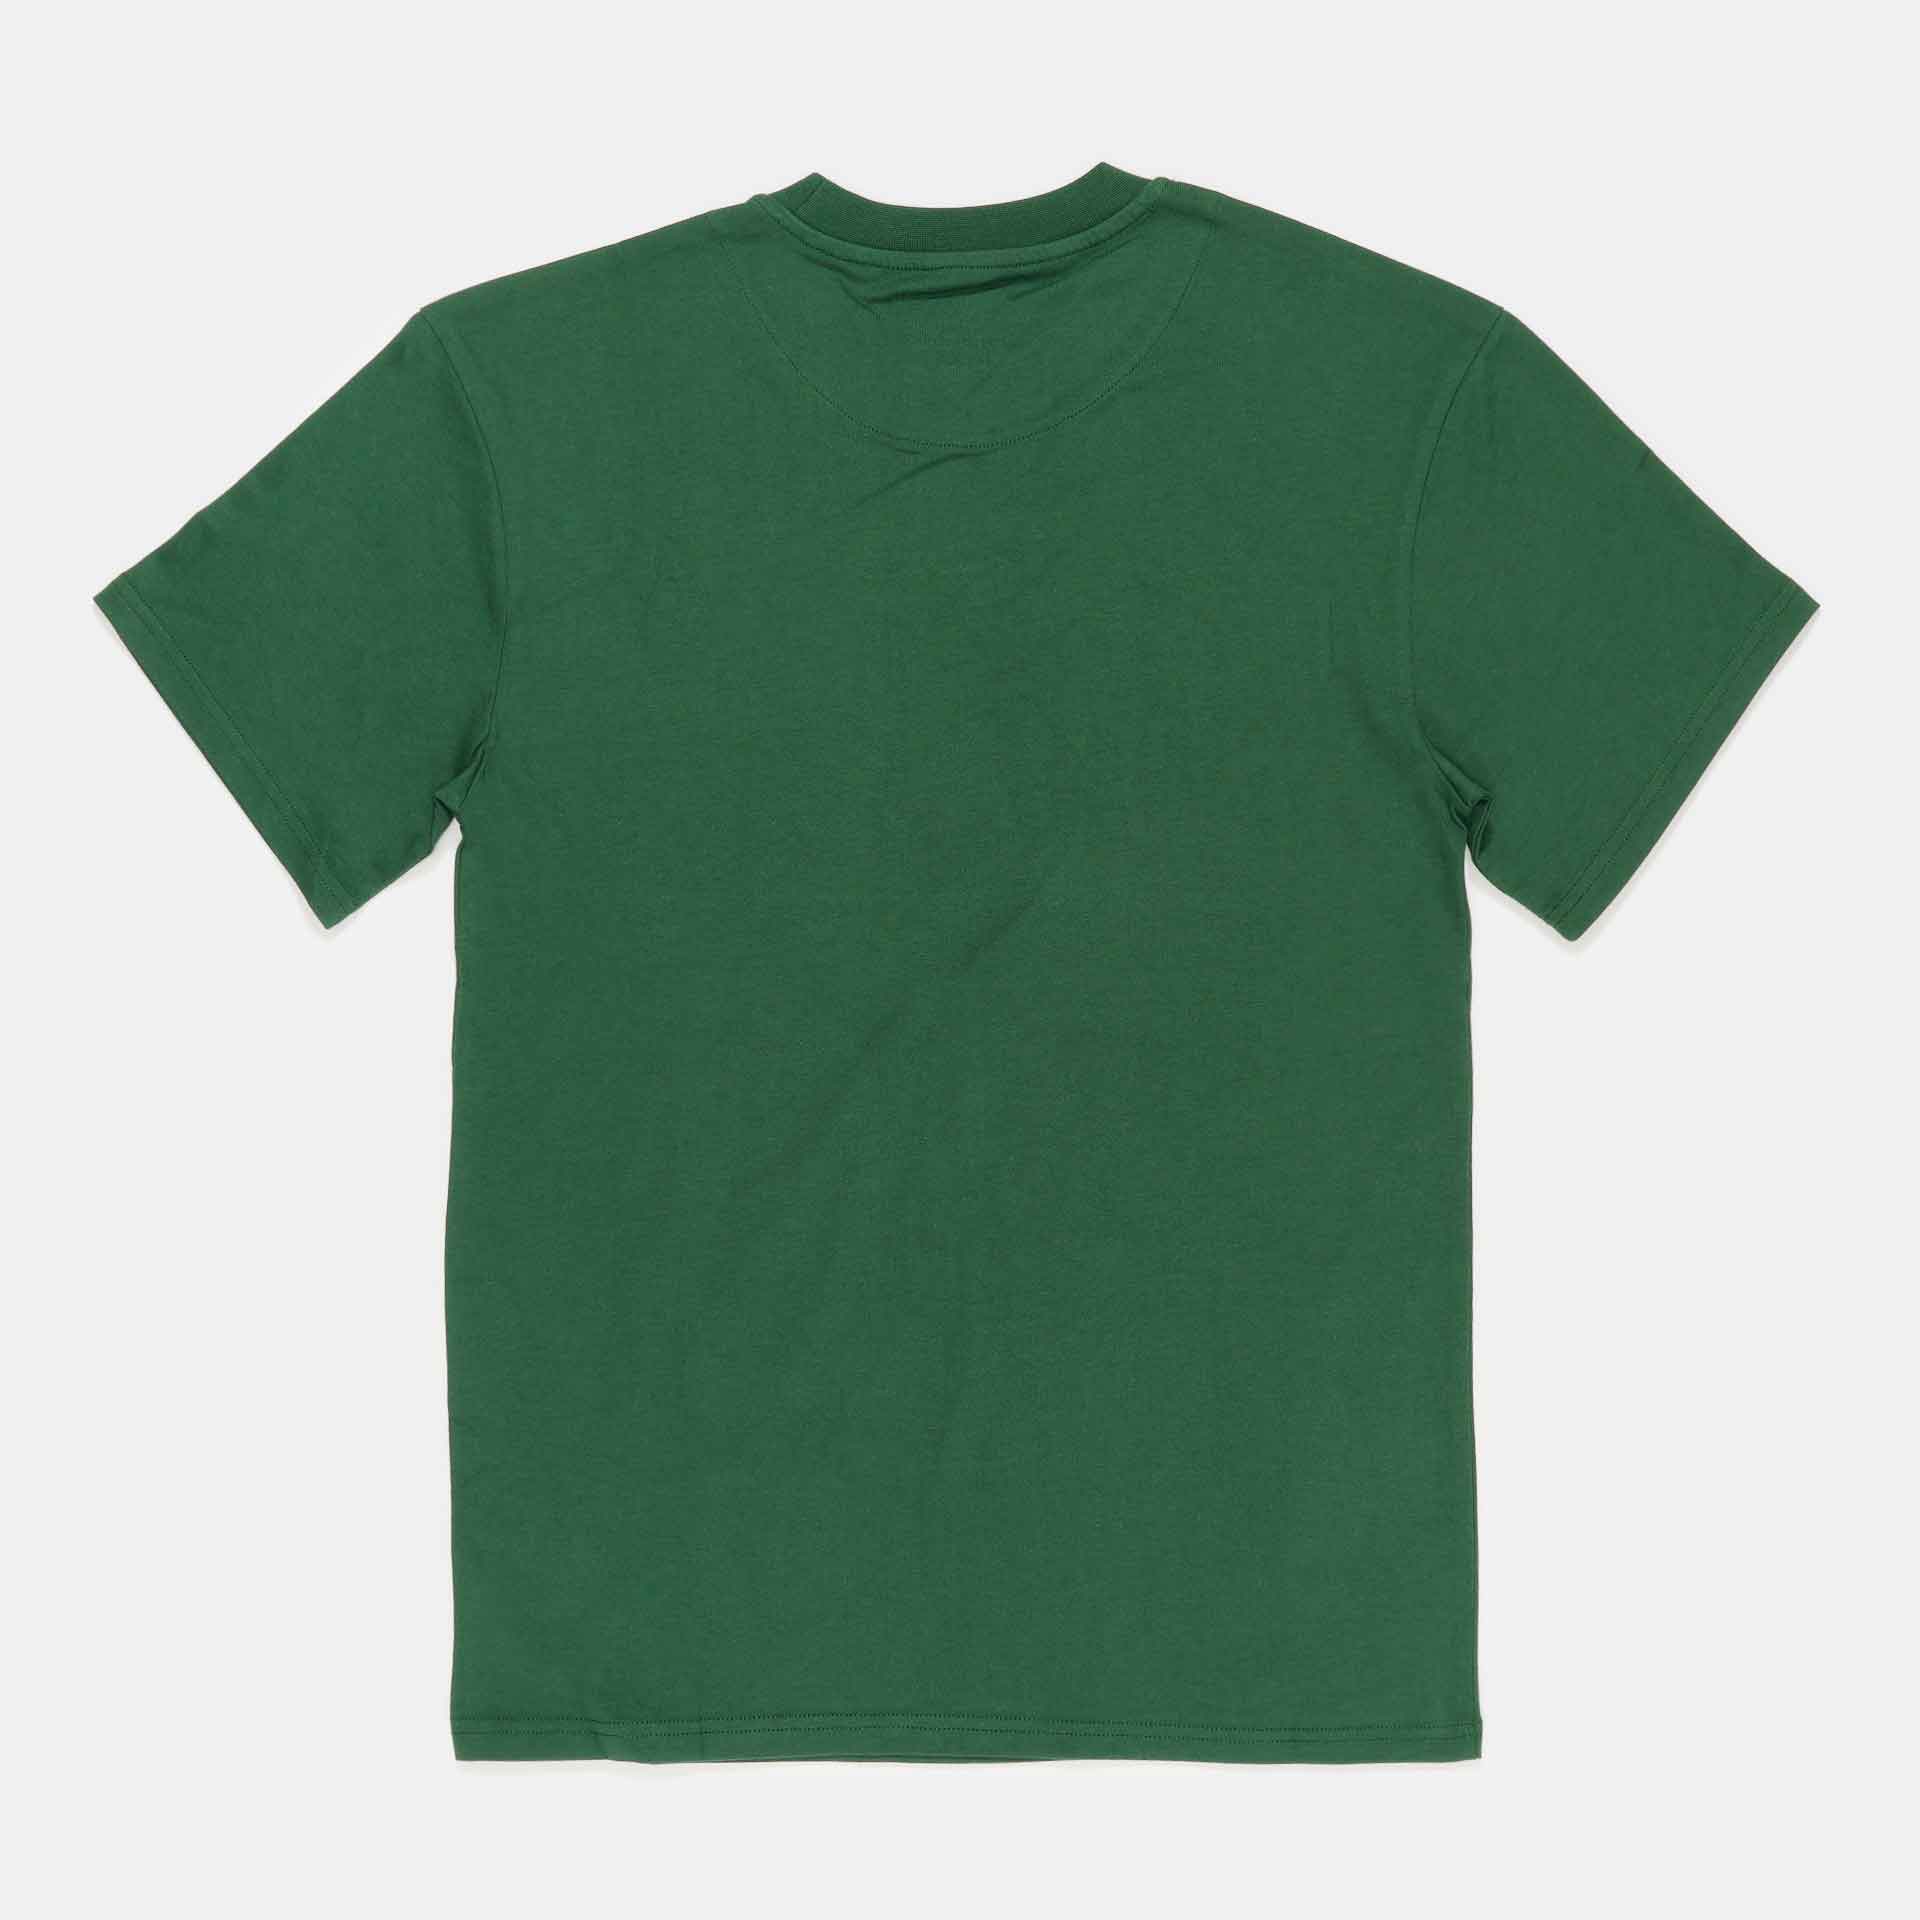 Karl Kani Small Signature Essential T-Shirt Dark Green